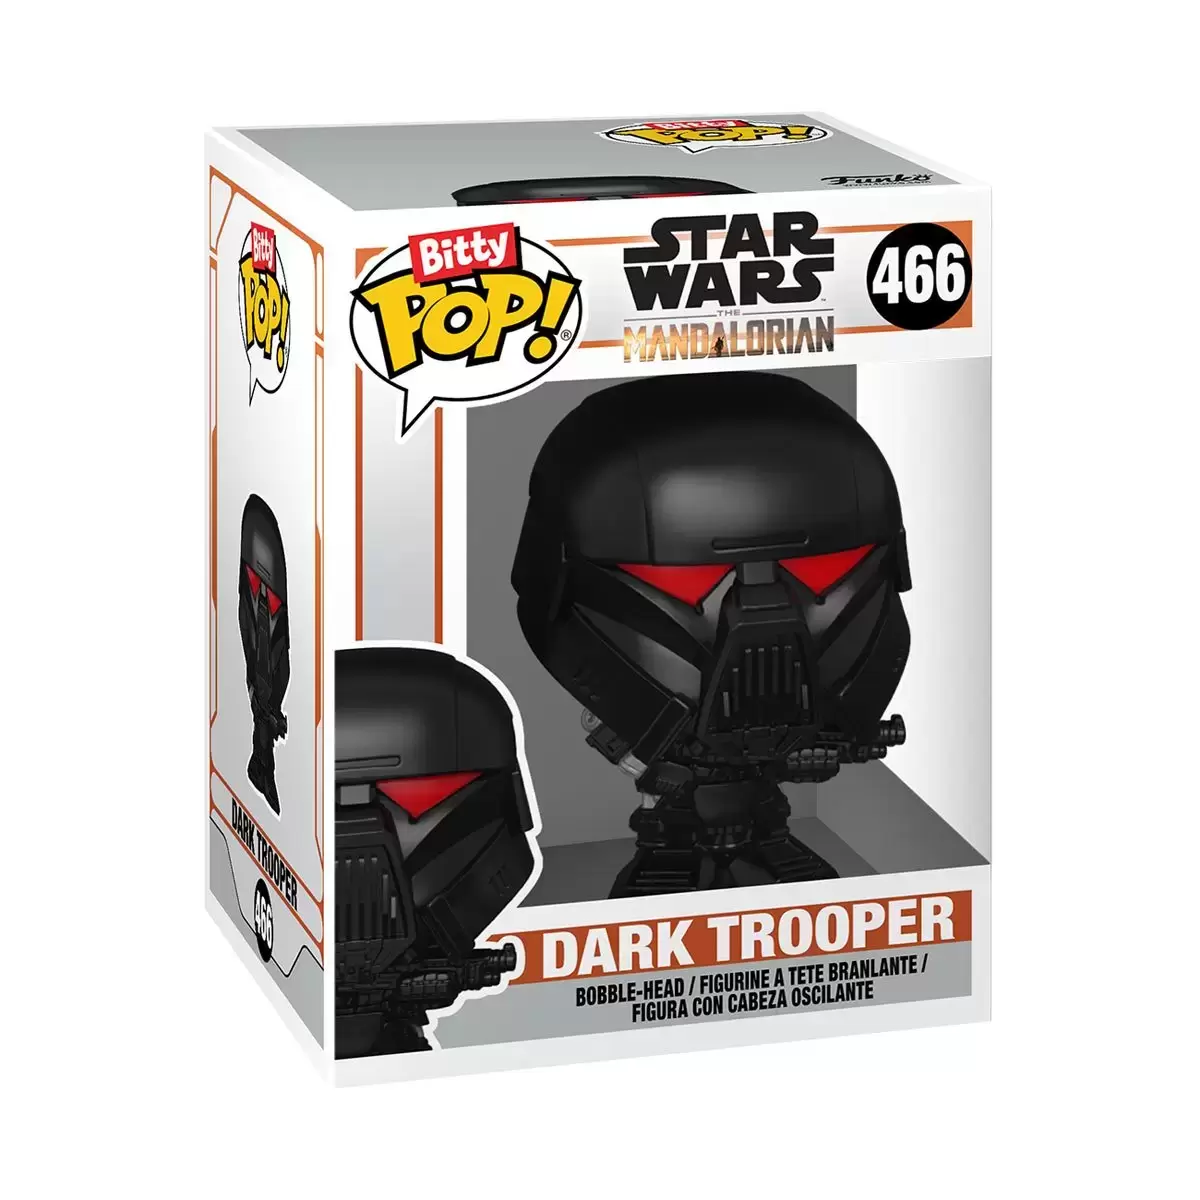 Bitty POP! - Star Wars - Dark Trooper